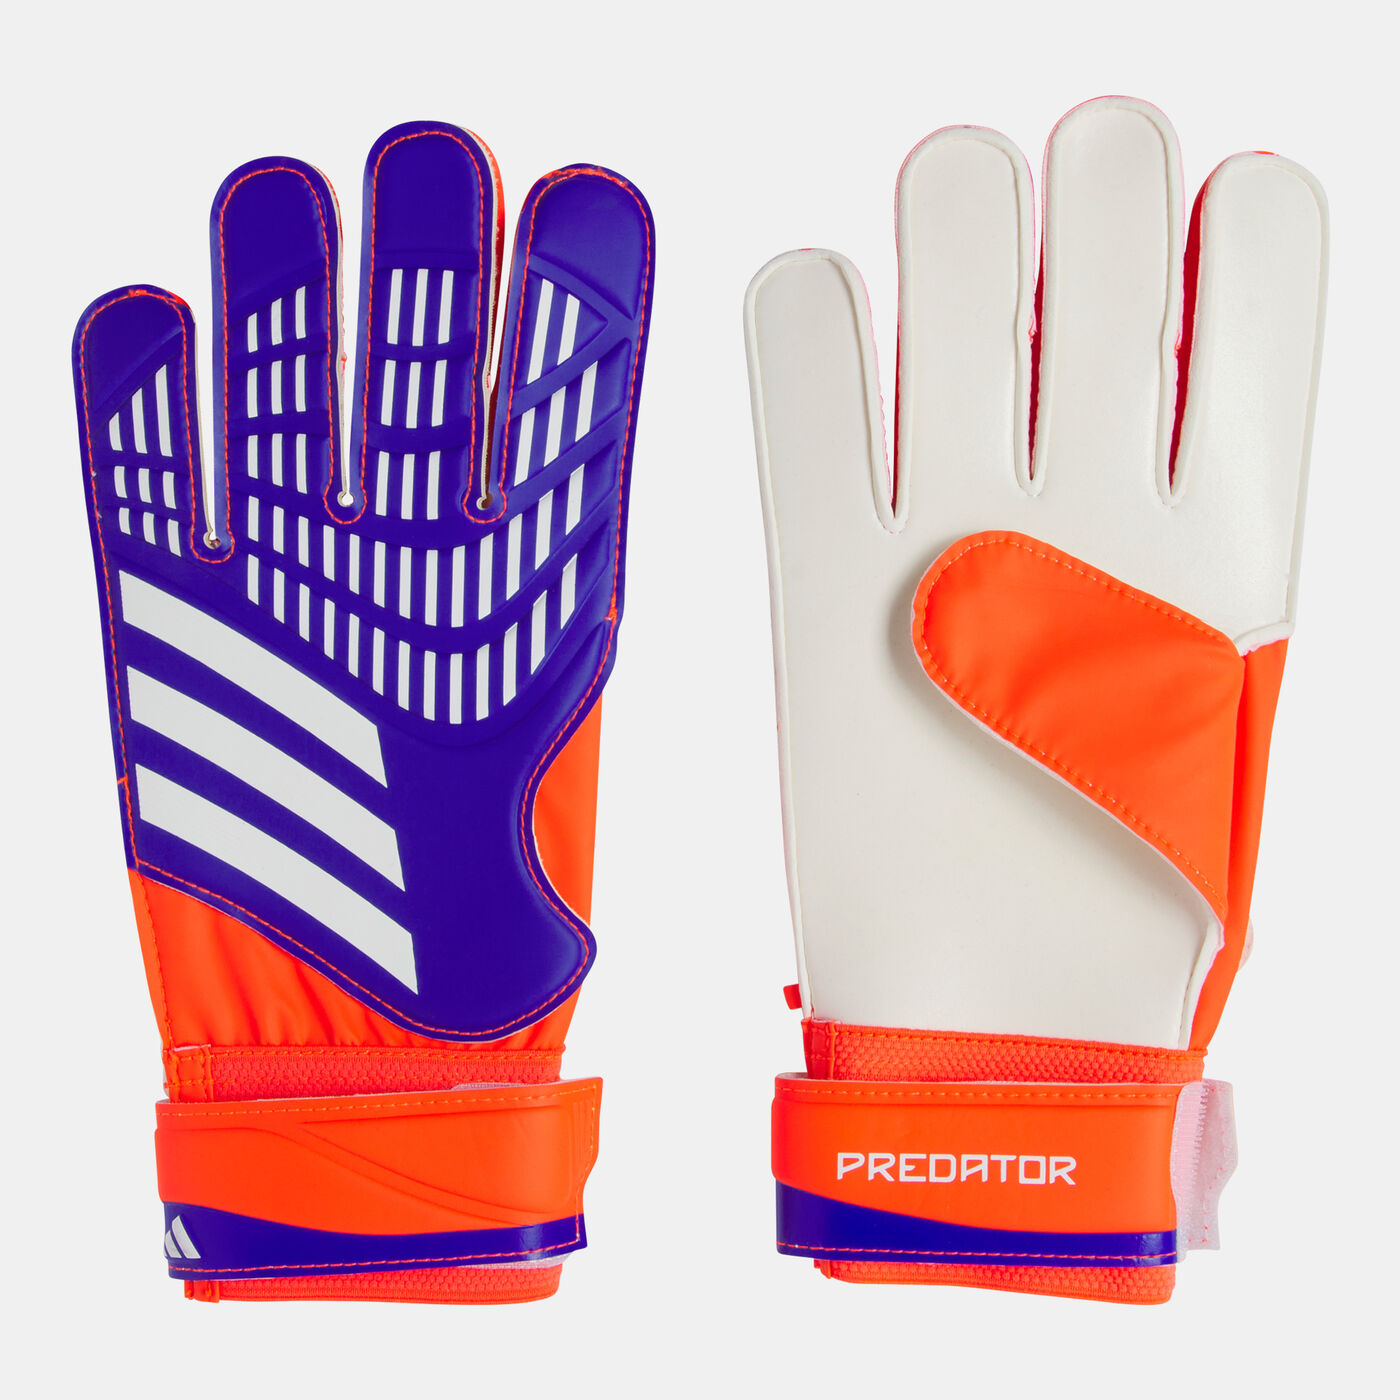 Predator Football Goalkeeper Gloves